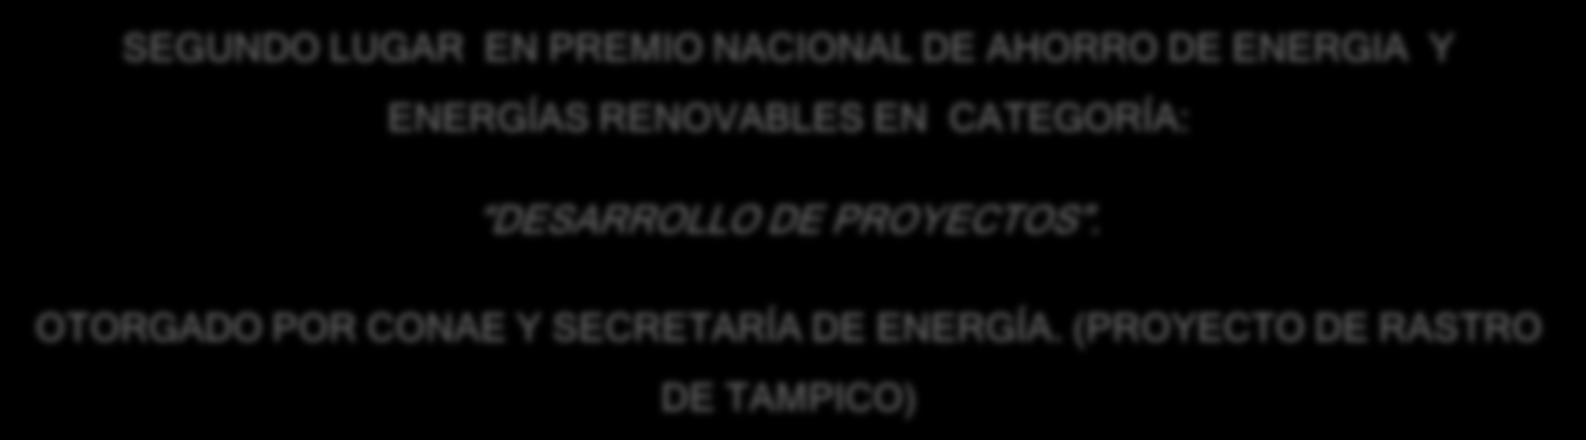 ENERGÍAS RENOVABLES EN CATEGORÍA: DESARROLLO DE PROYECTOS.